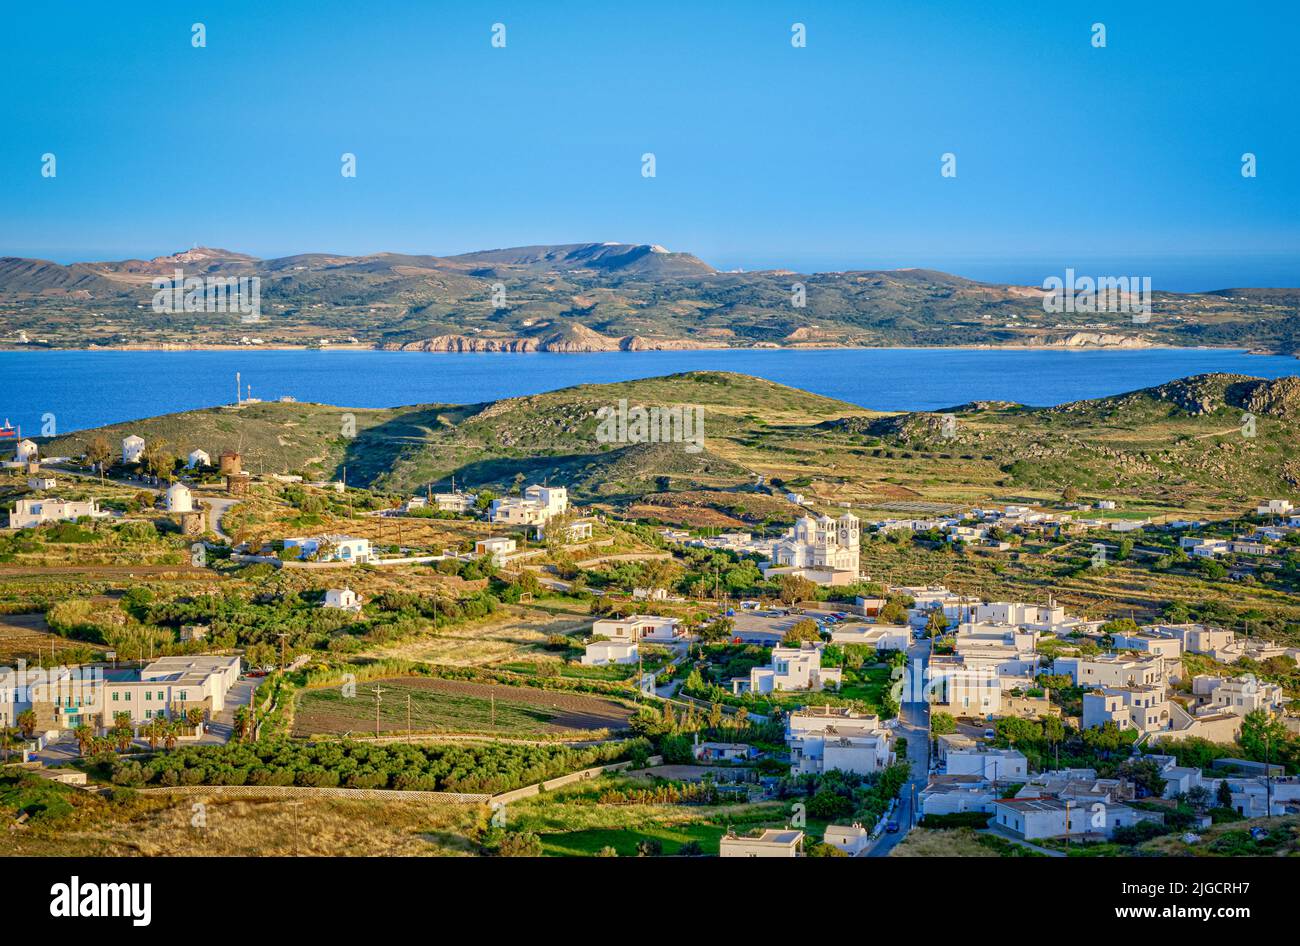 Belle vue sur la ville de Trypiti, la baie et les villages de l'île de Milos au coucher du soleil, Grèce. Maisons blanchies à la chaux, collines vertes, soleil bas, mer bleue, ciel clair, Banque D'Images